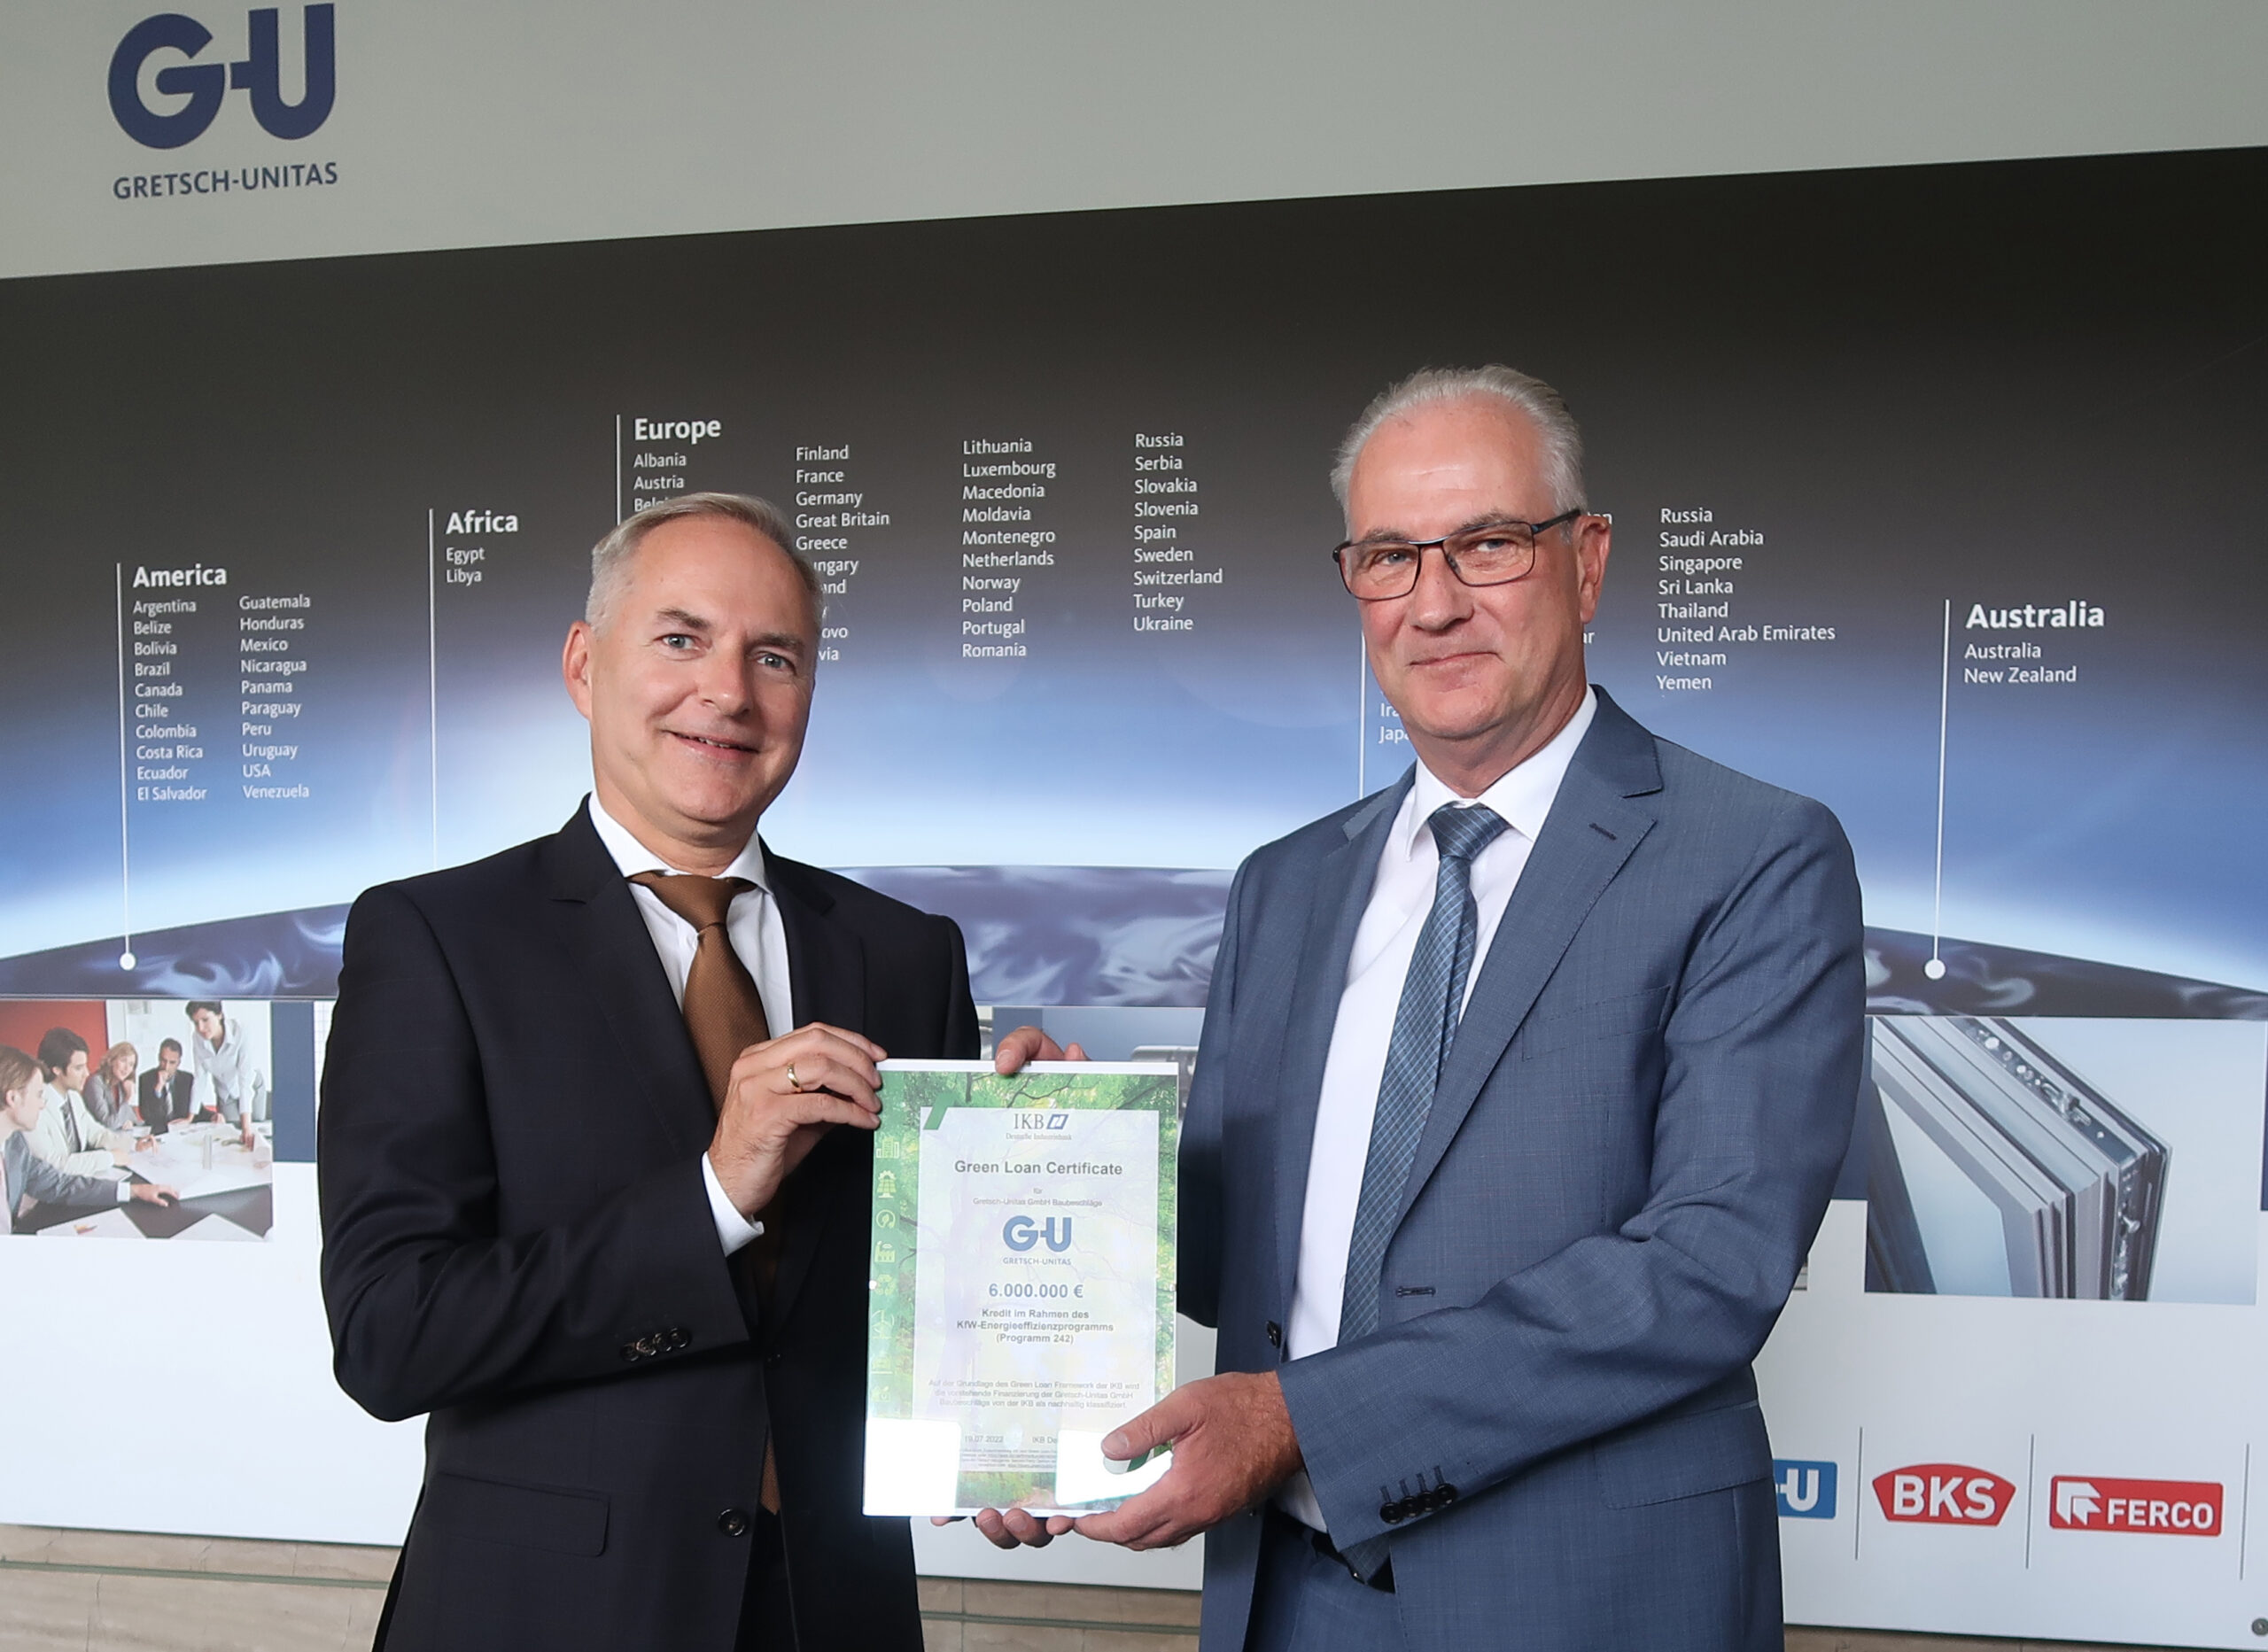 Gretsch-Unitas GmbH Baubeschläge in Ditzingen erhält Green Loan Certificate